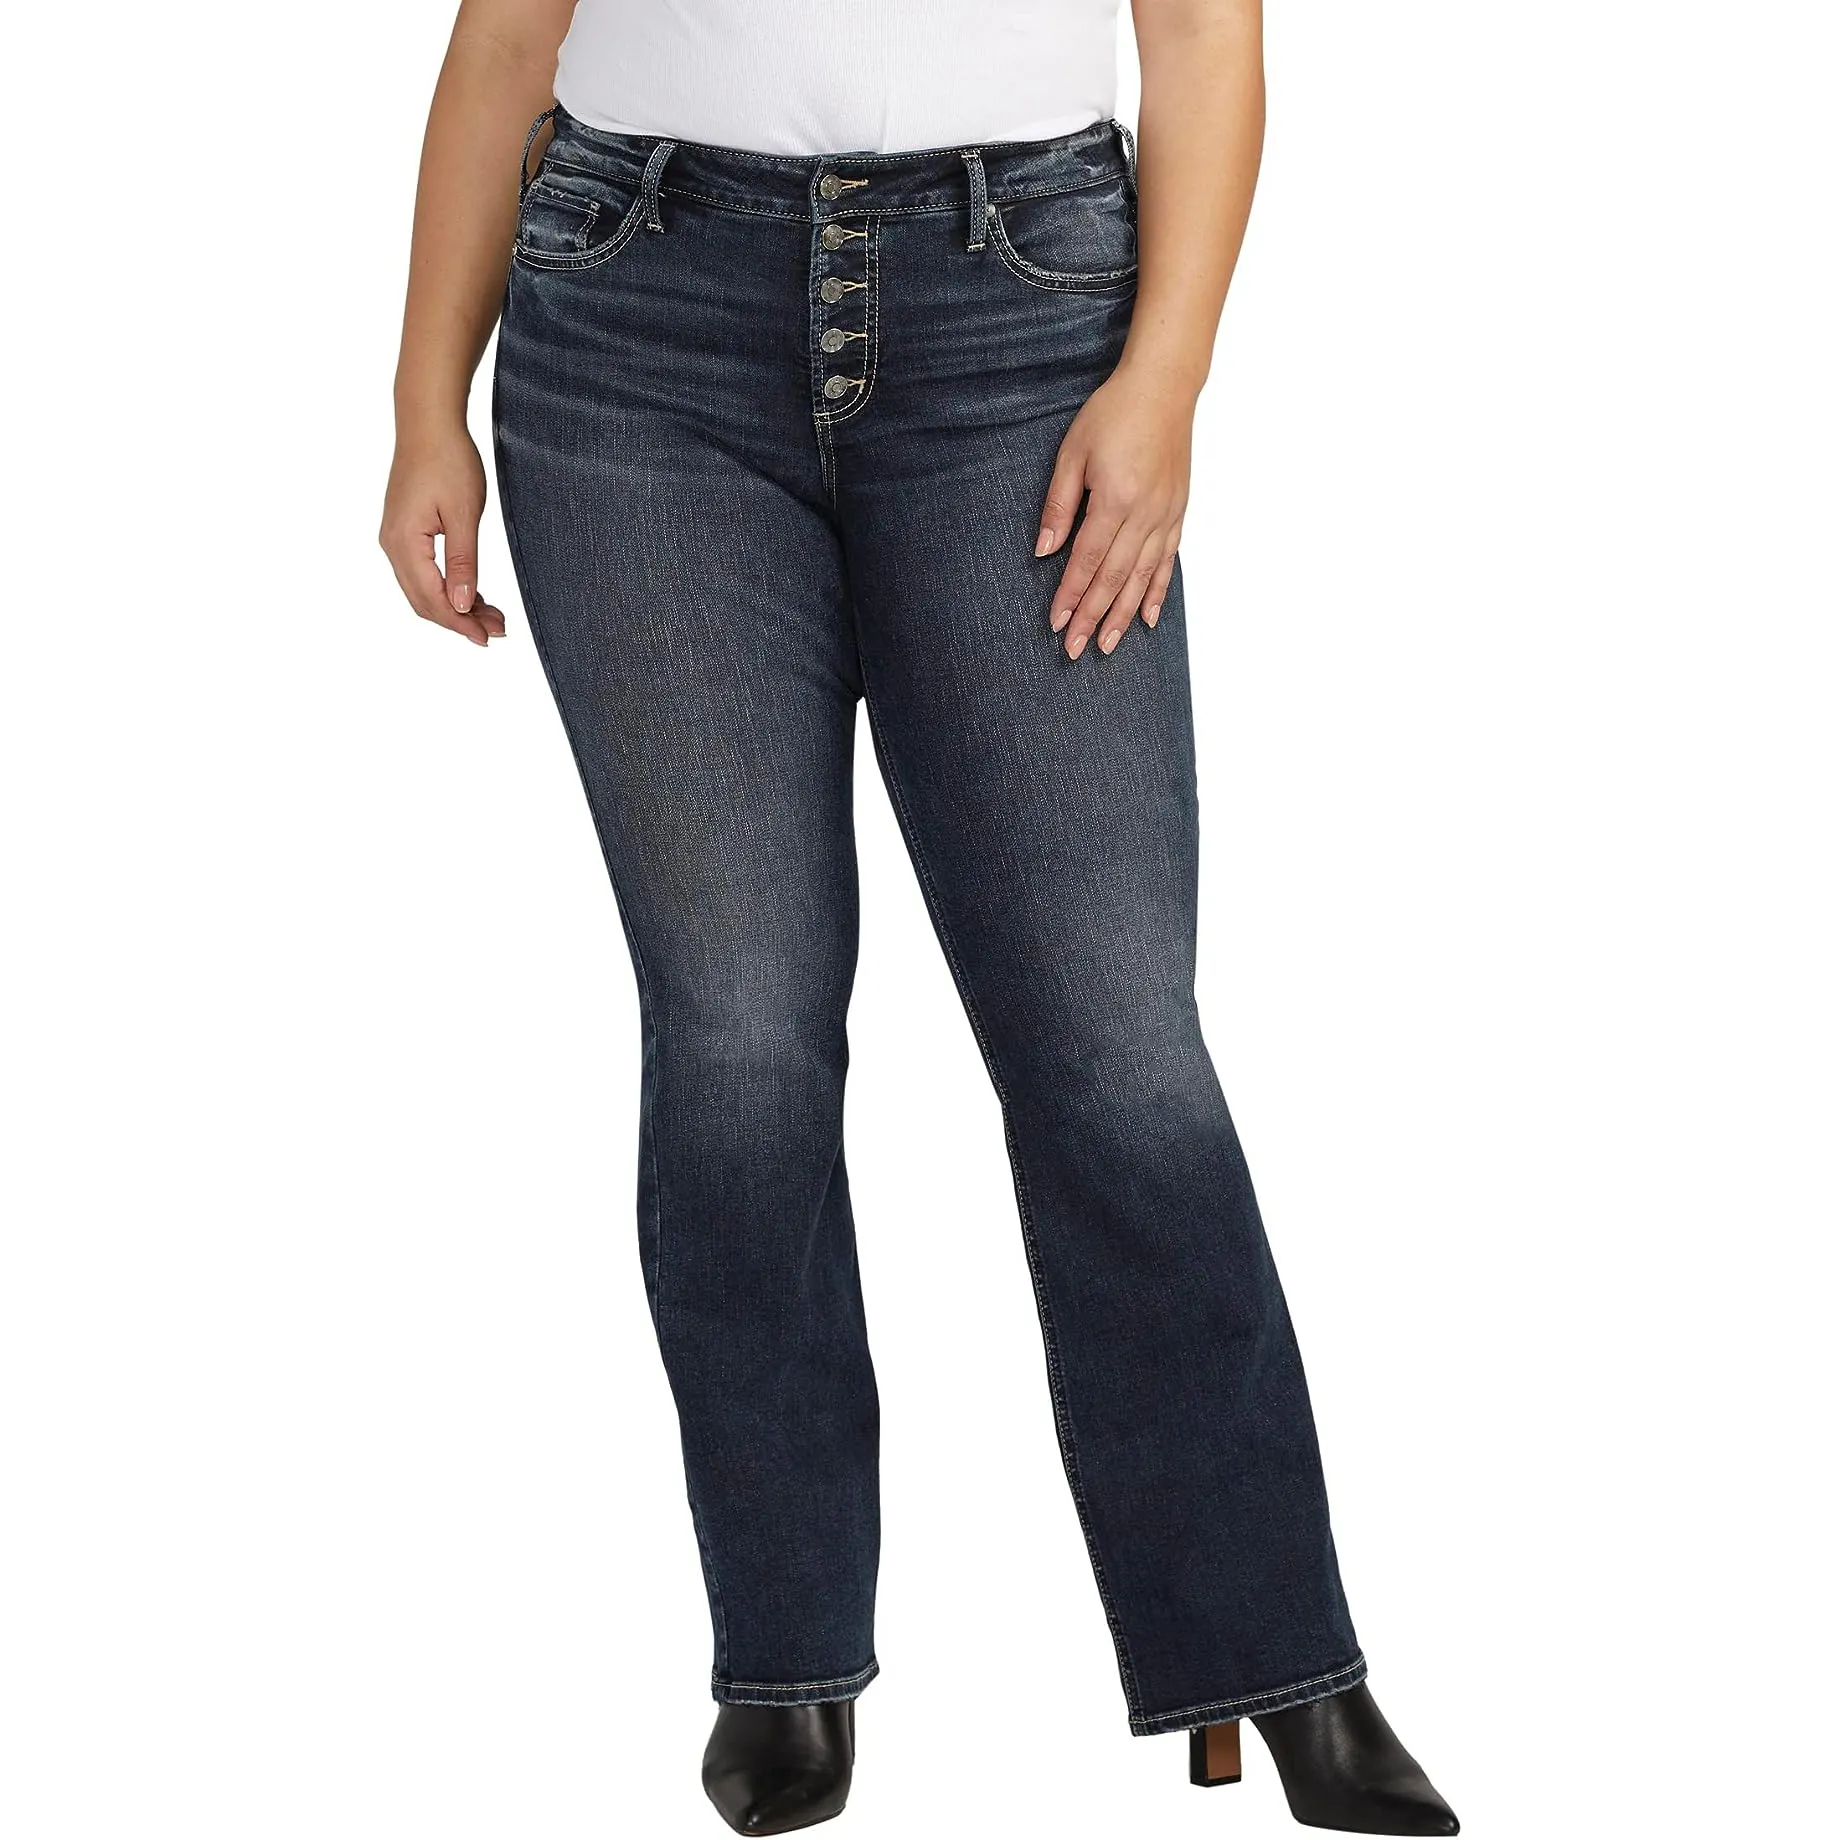 Jeans Denim Femme Beaux Boutons Argentés Denim Longueur Cheville Pantalon Décontracté Streetwear Dames Coton Taille Haute Jeans